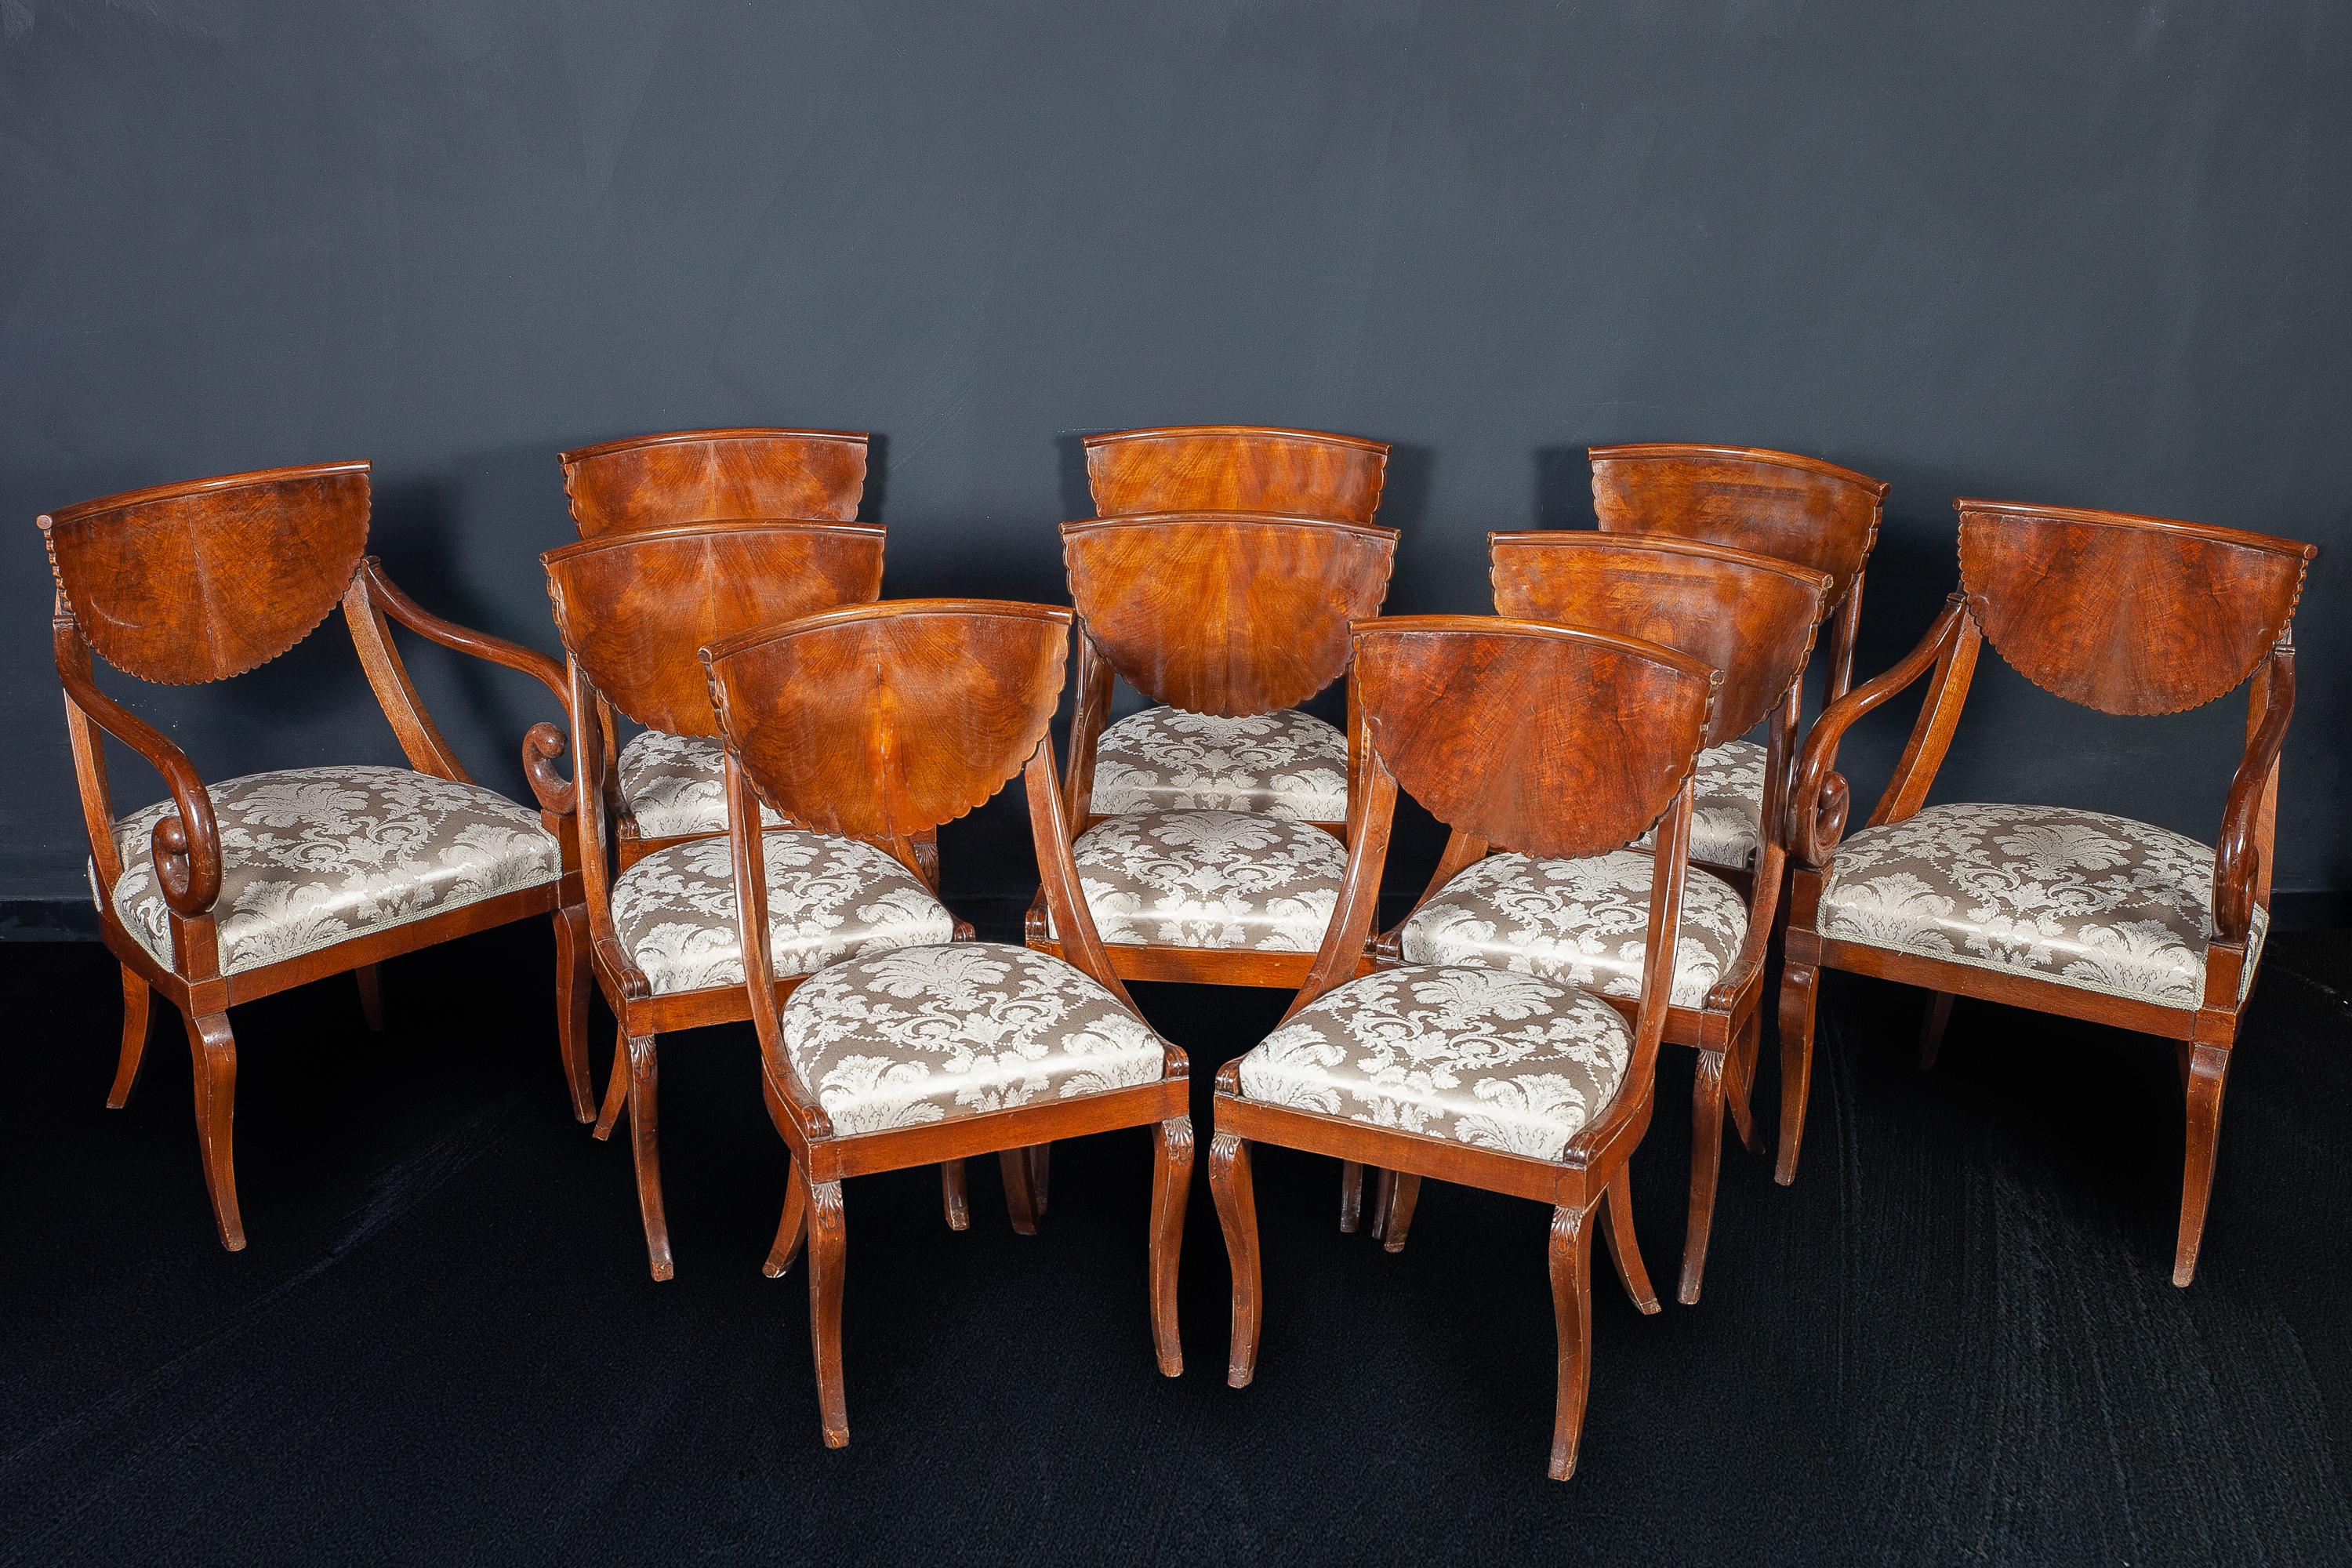 Eine schöne Reihe von Stühlen aus norditalienischem Nussbaum (8) und ein Paar Sessel,
Bedeckt mit elfenbeinfarbener Seide in perfektem Zustand.
Lombardei Norditalien, letztes Viertel des 18. Jahrhunderts.